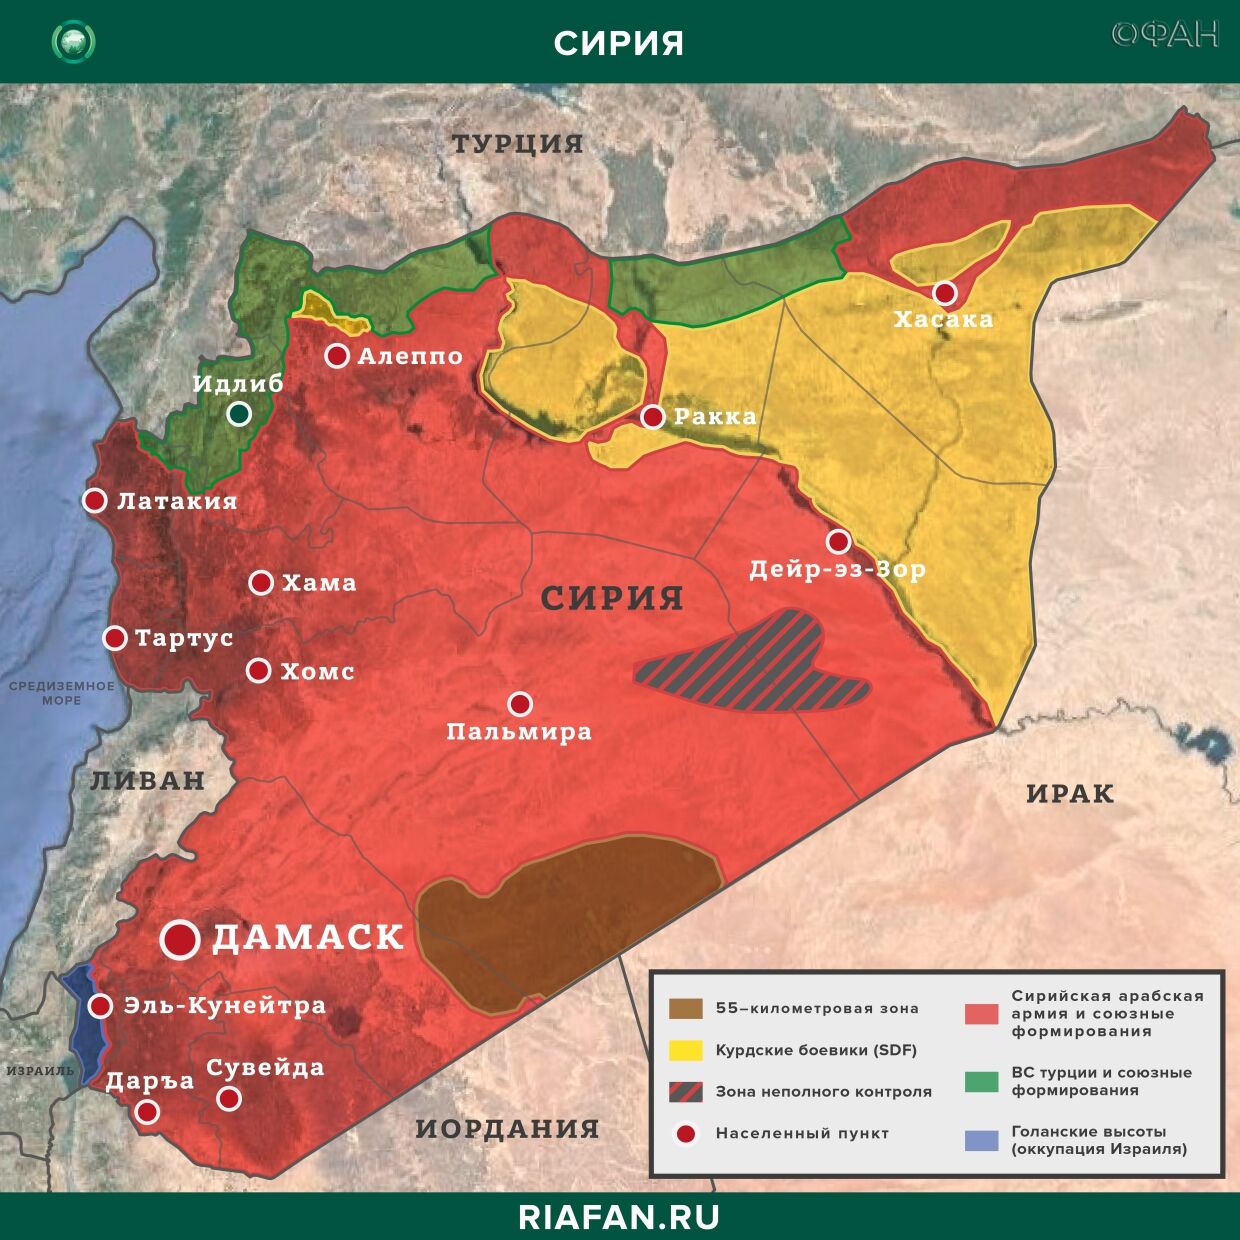 Последние новости Сирии. Сегодня 30 марта 2020 агентство, провинции, несколько, террористов, сообщает, марта, новостей, «Исламского, контроль, курдских, удалось, востоке, после, агентства, Сирии», также, содержатся, военнослужащих, подростка, данным